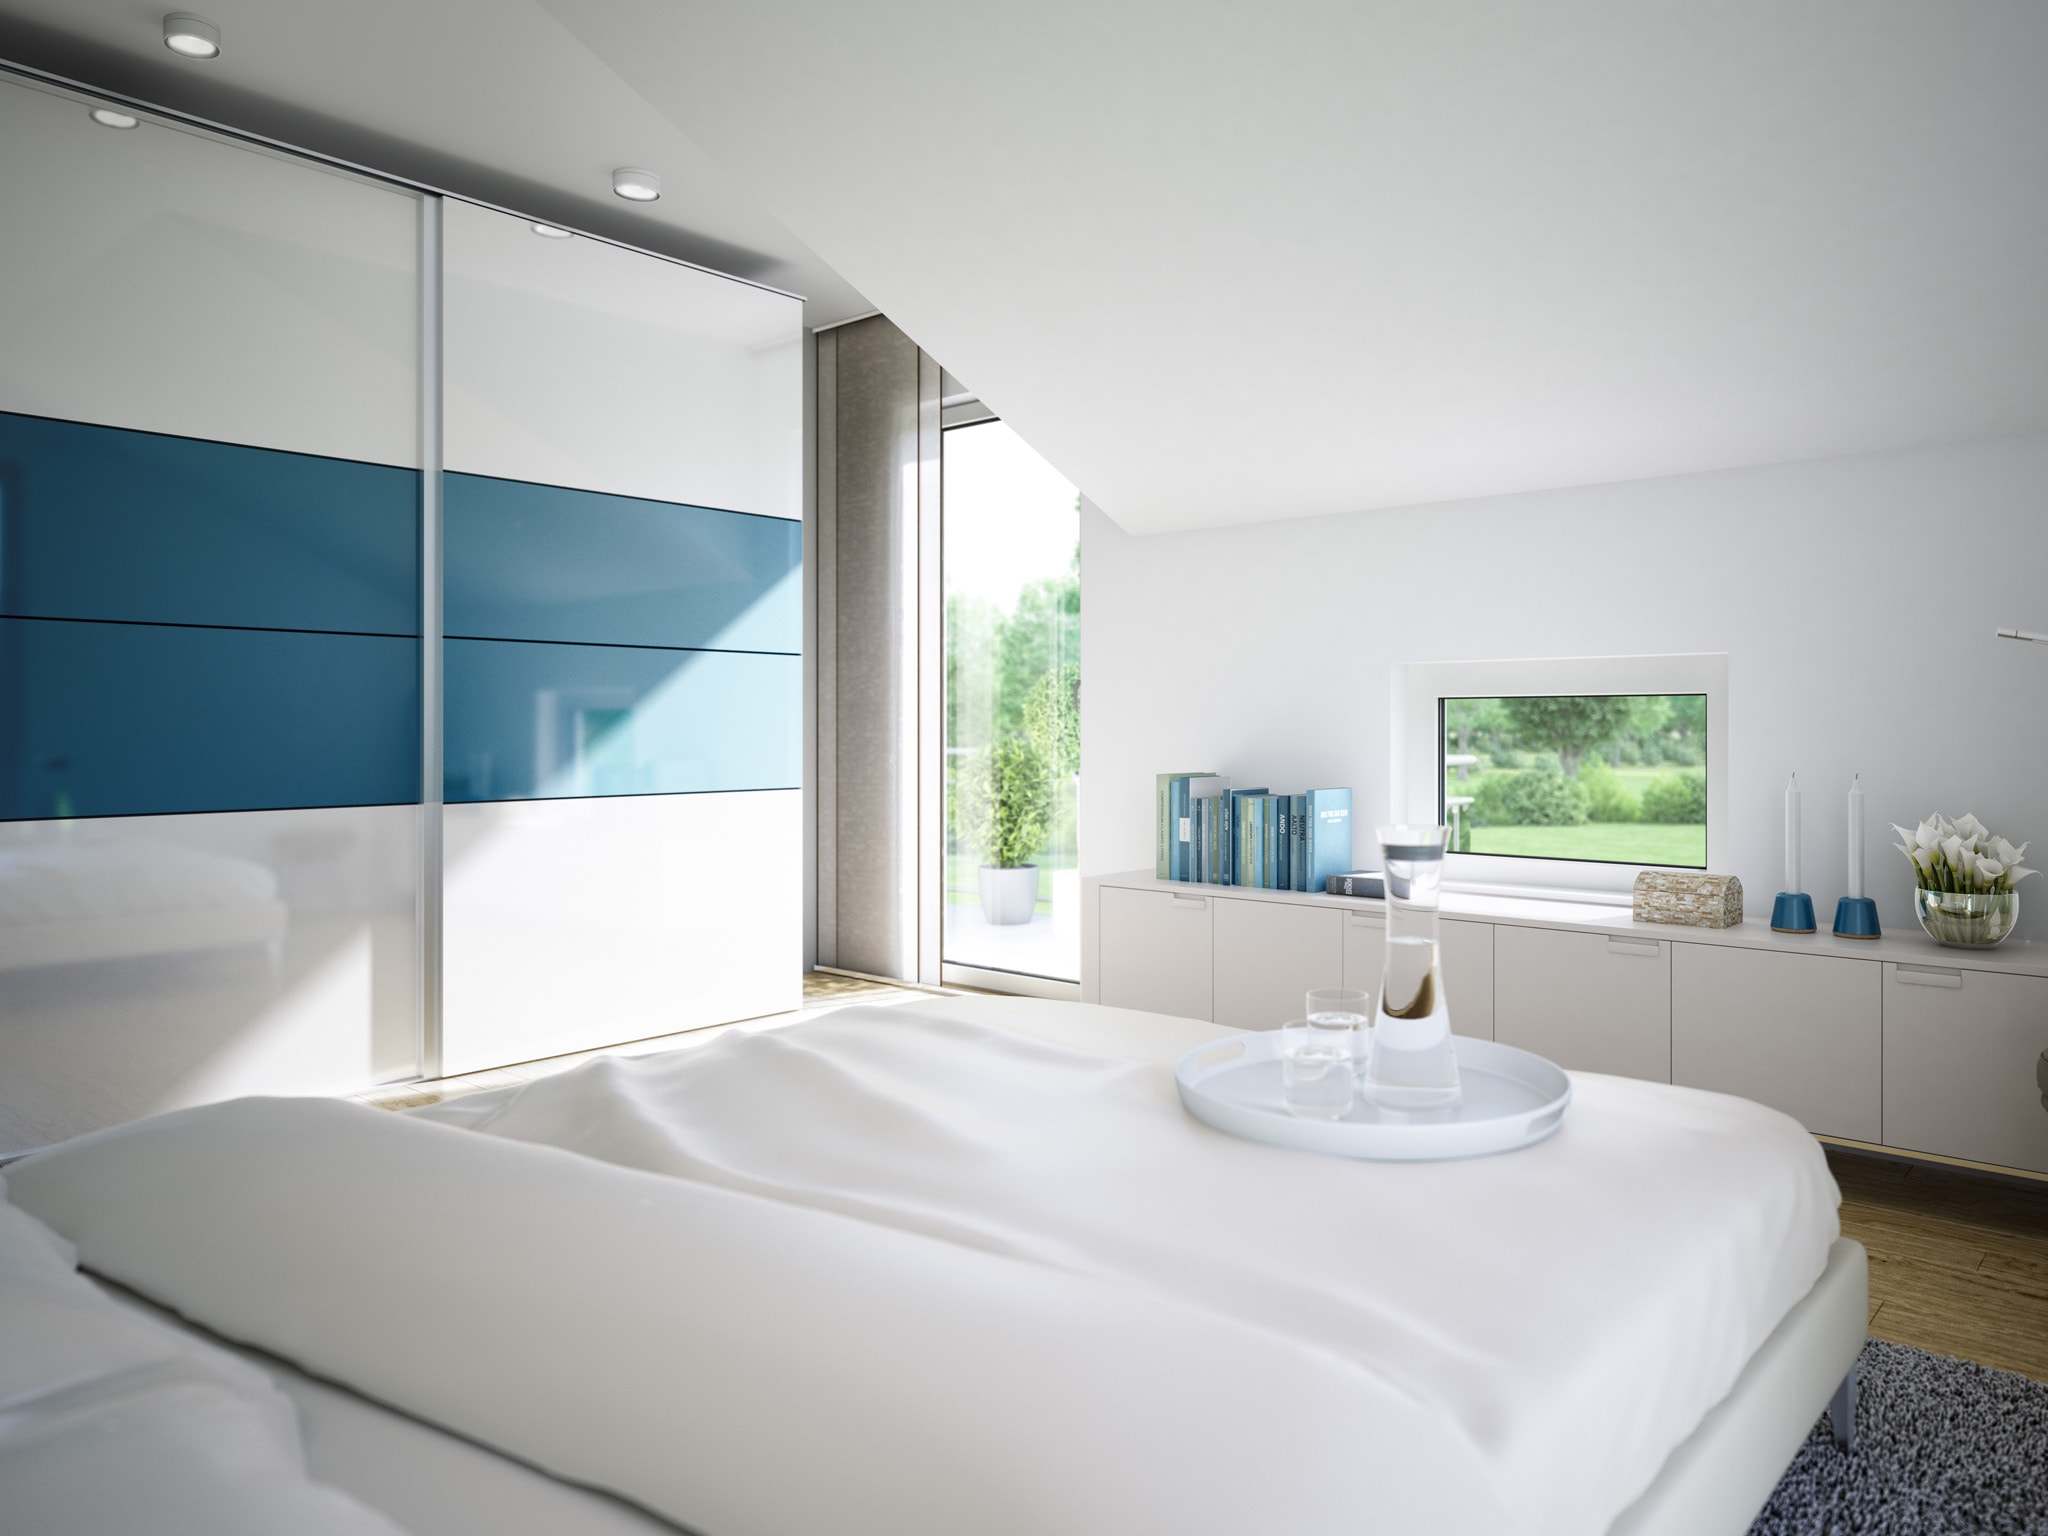 Schlafzimmer Ideen modern mit Dachschräge - Wohnideen Fertighaus innen SUNSHINE 125 V4 von Living Haus - HausbauDirekt.de